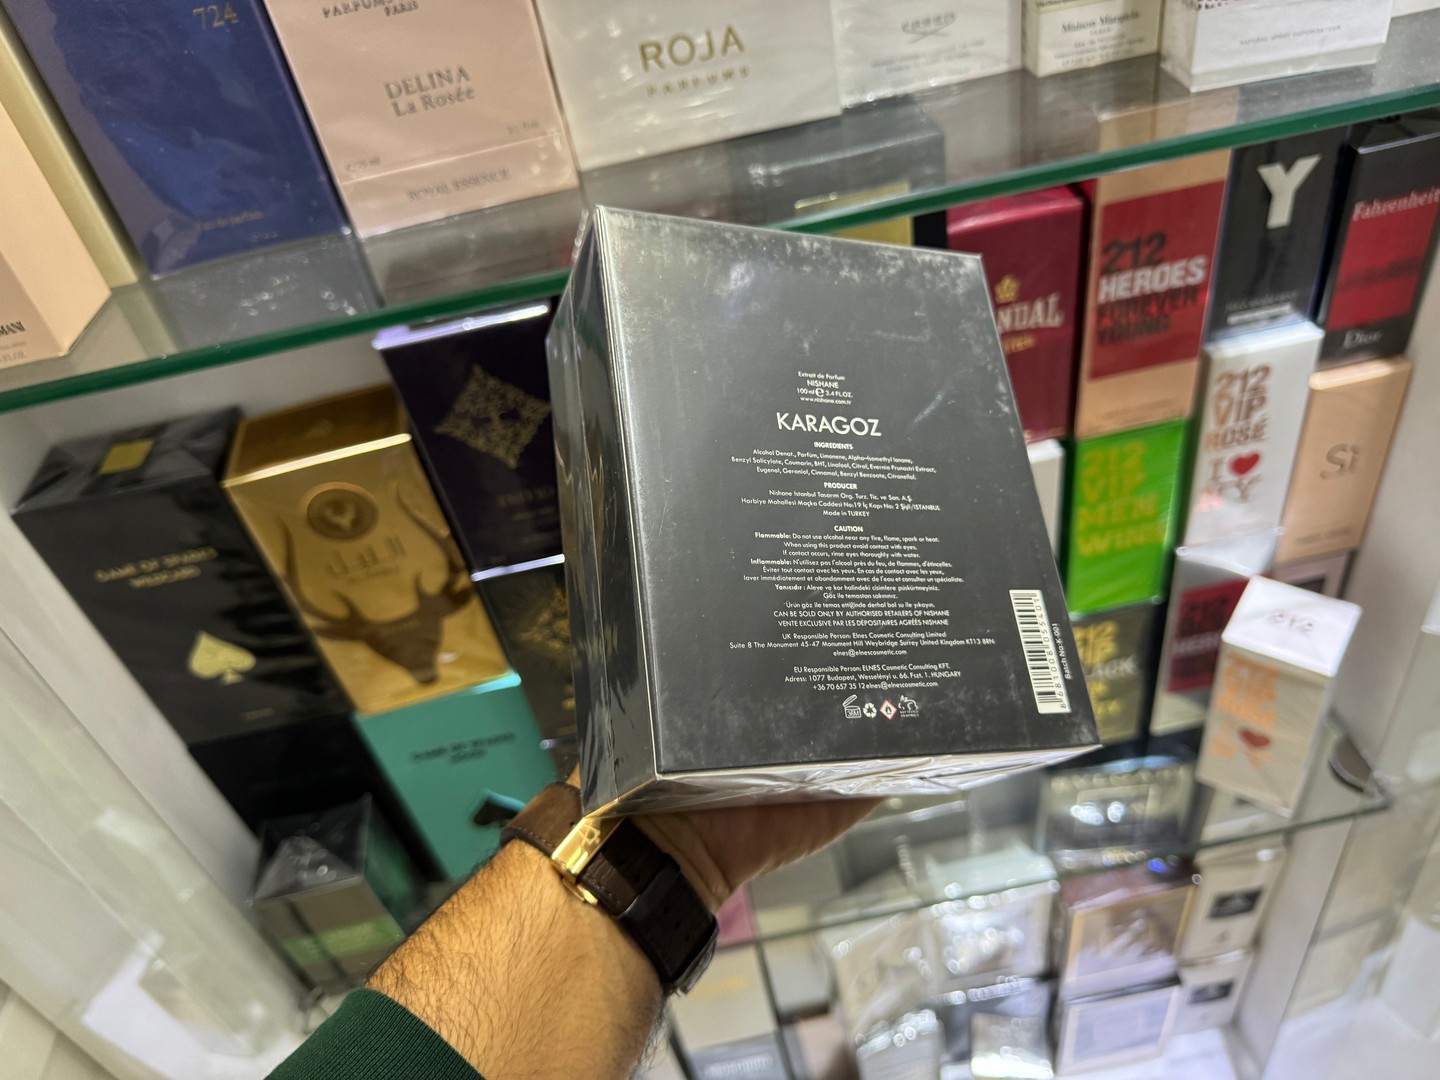 joyas, relojes y accesorios - Vendo Perfume NISHANE KARAGOZ 100ML - Nuevos, Originales $ 13,900 NEG 1